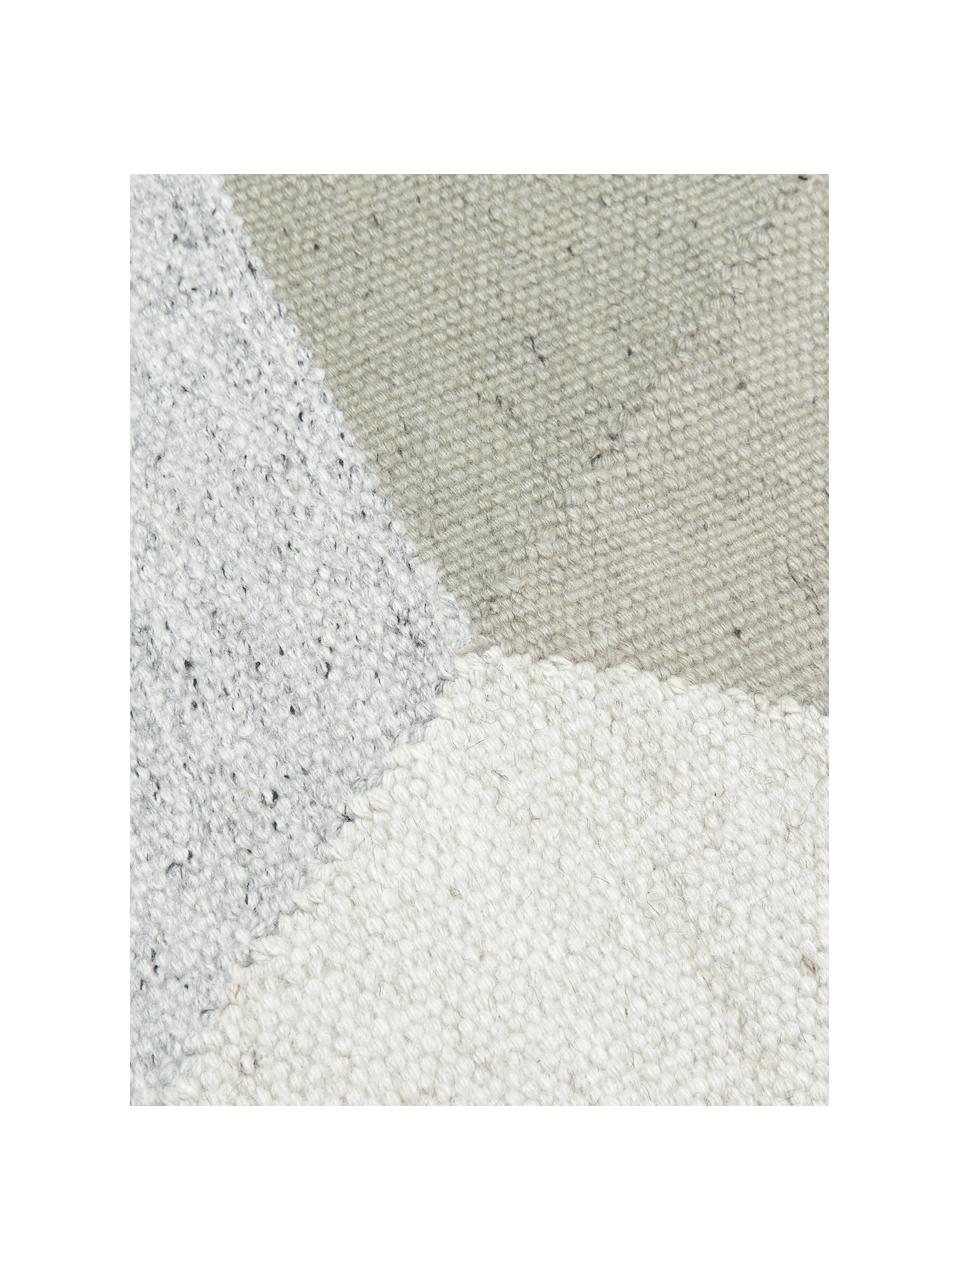 Handgewebter Viskoseteppich Snefrid mit abstraktem Muster, 80% Viskose, 20% Wolle, Grün, Grau, Beige, B 200 x L 300 cm (Größe L)